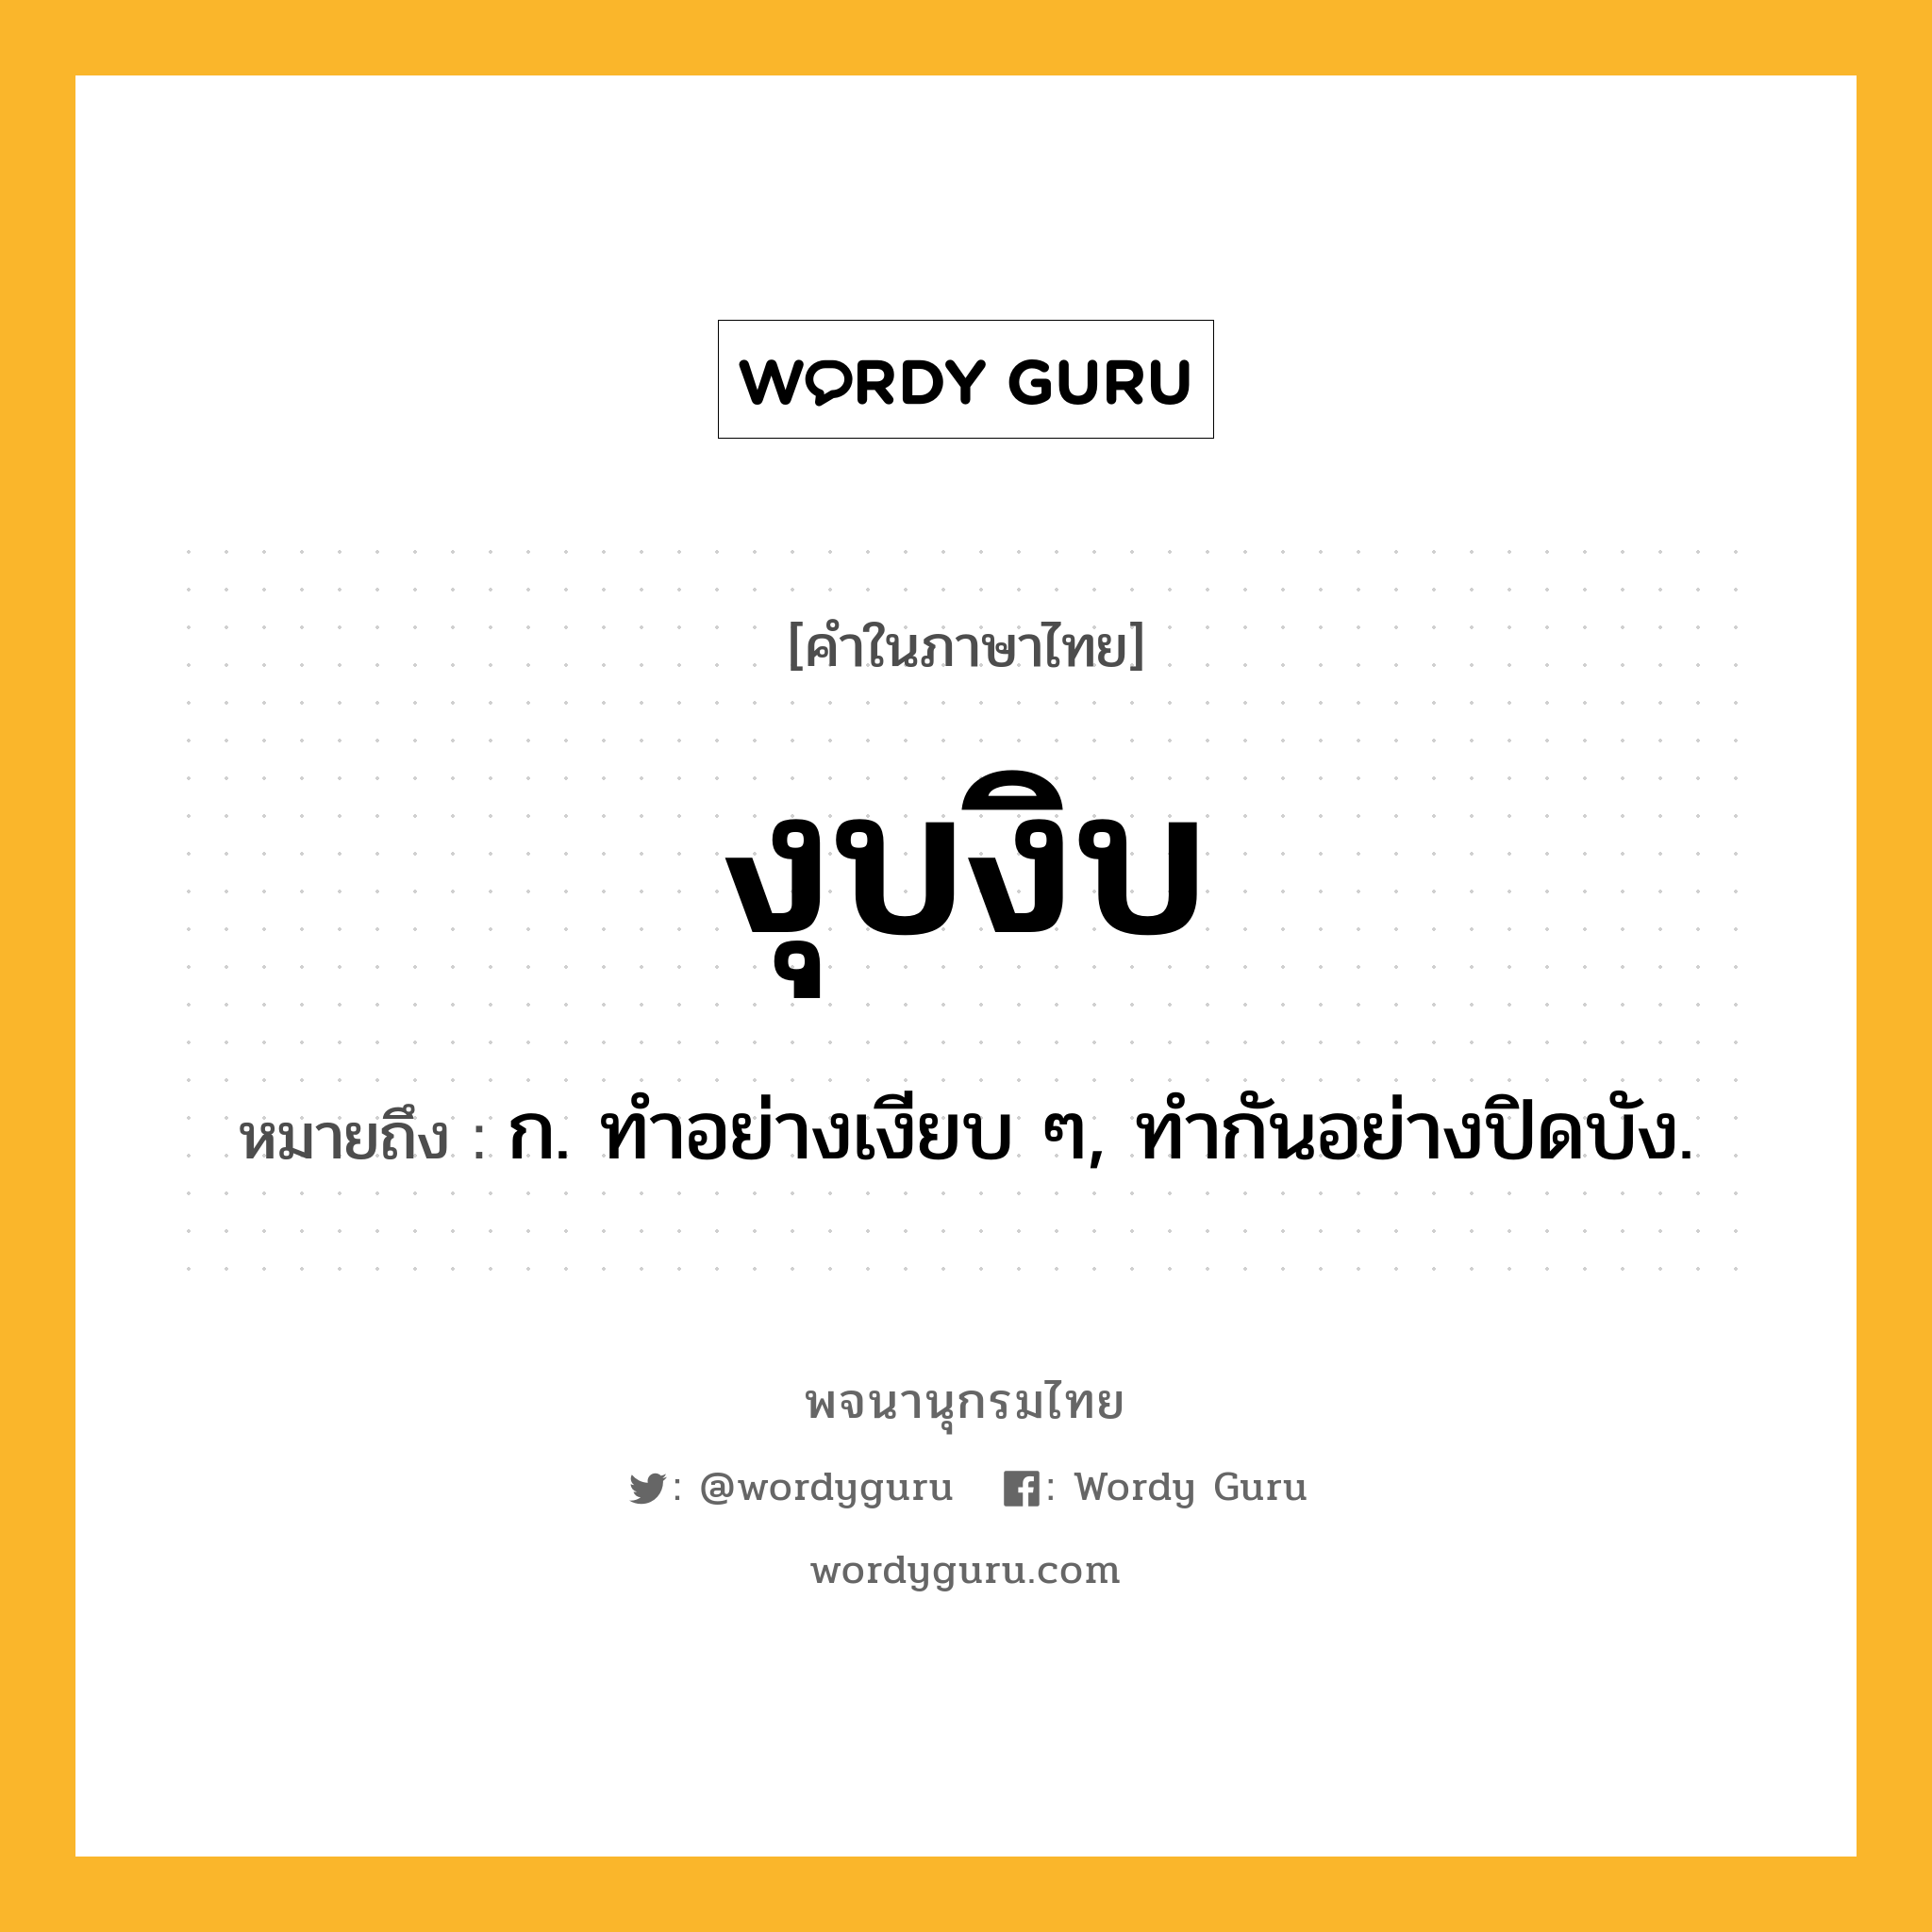 งุบงิบ หมายถึงอะไร?, คำในภาษาไทย งุบงิบ หมายถึง ก. ทําอย่างเงียบ ๆ, ทํากันอย่างปิดบัง.